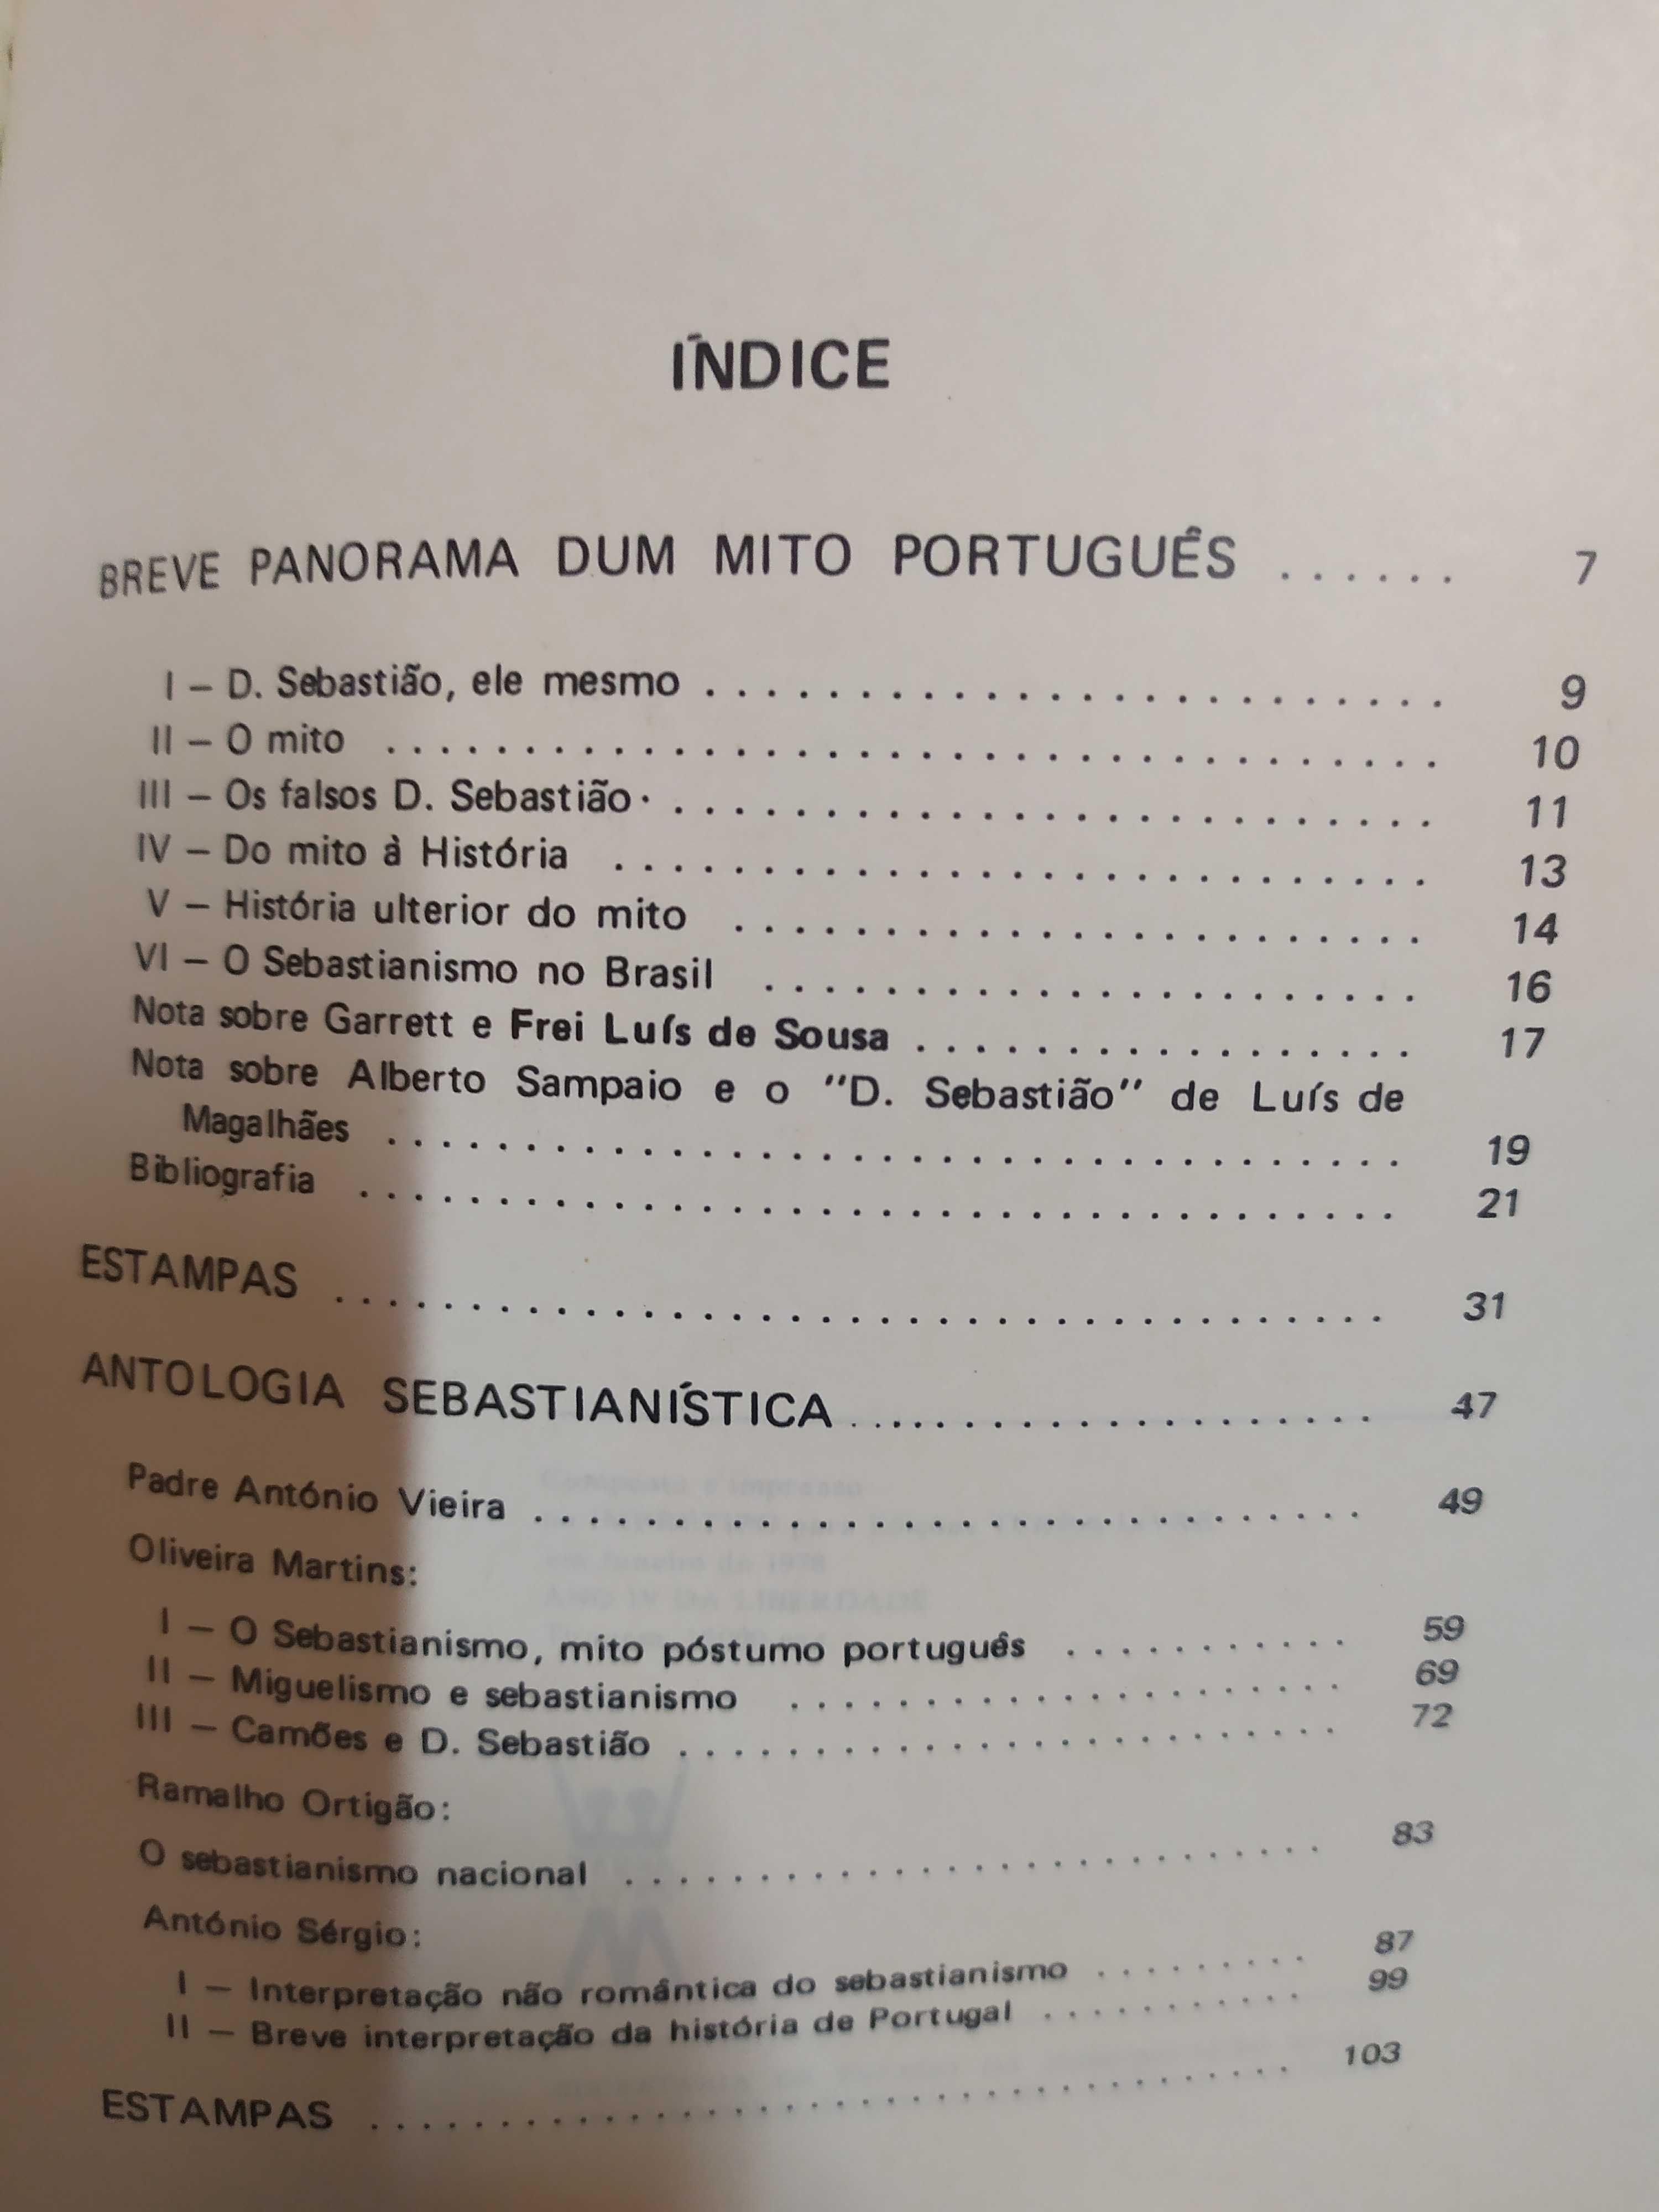 O Sebastianismo - Breve Panorama dum Mito Português